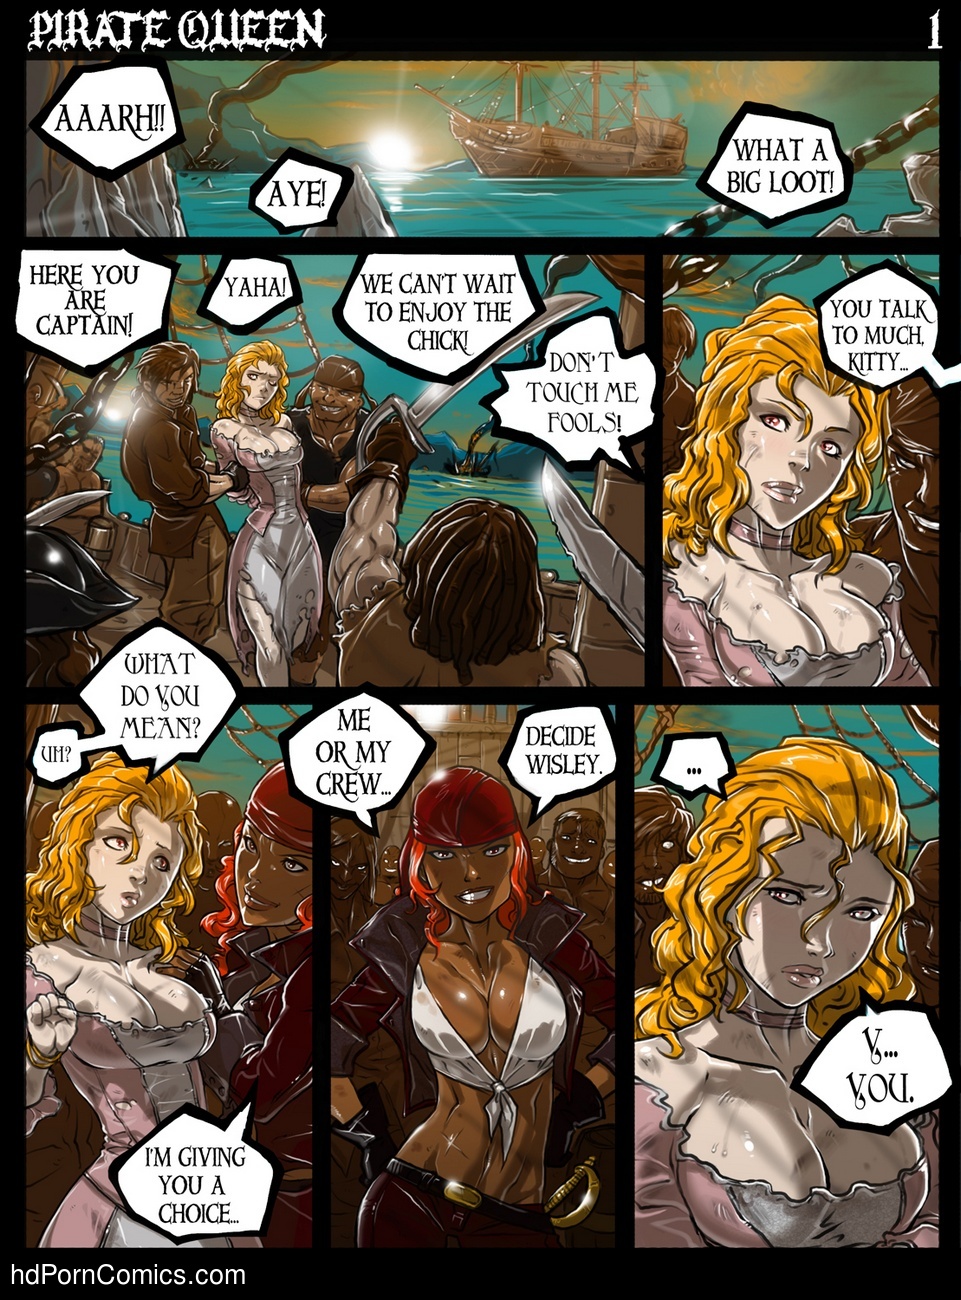 Pirate Queen Sex Comic â€“ HD Porn Comics